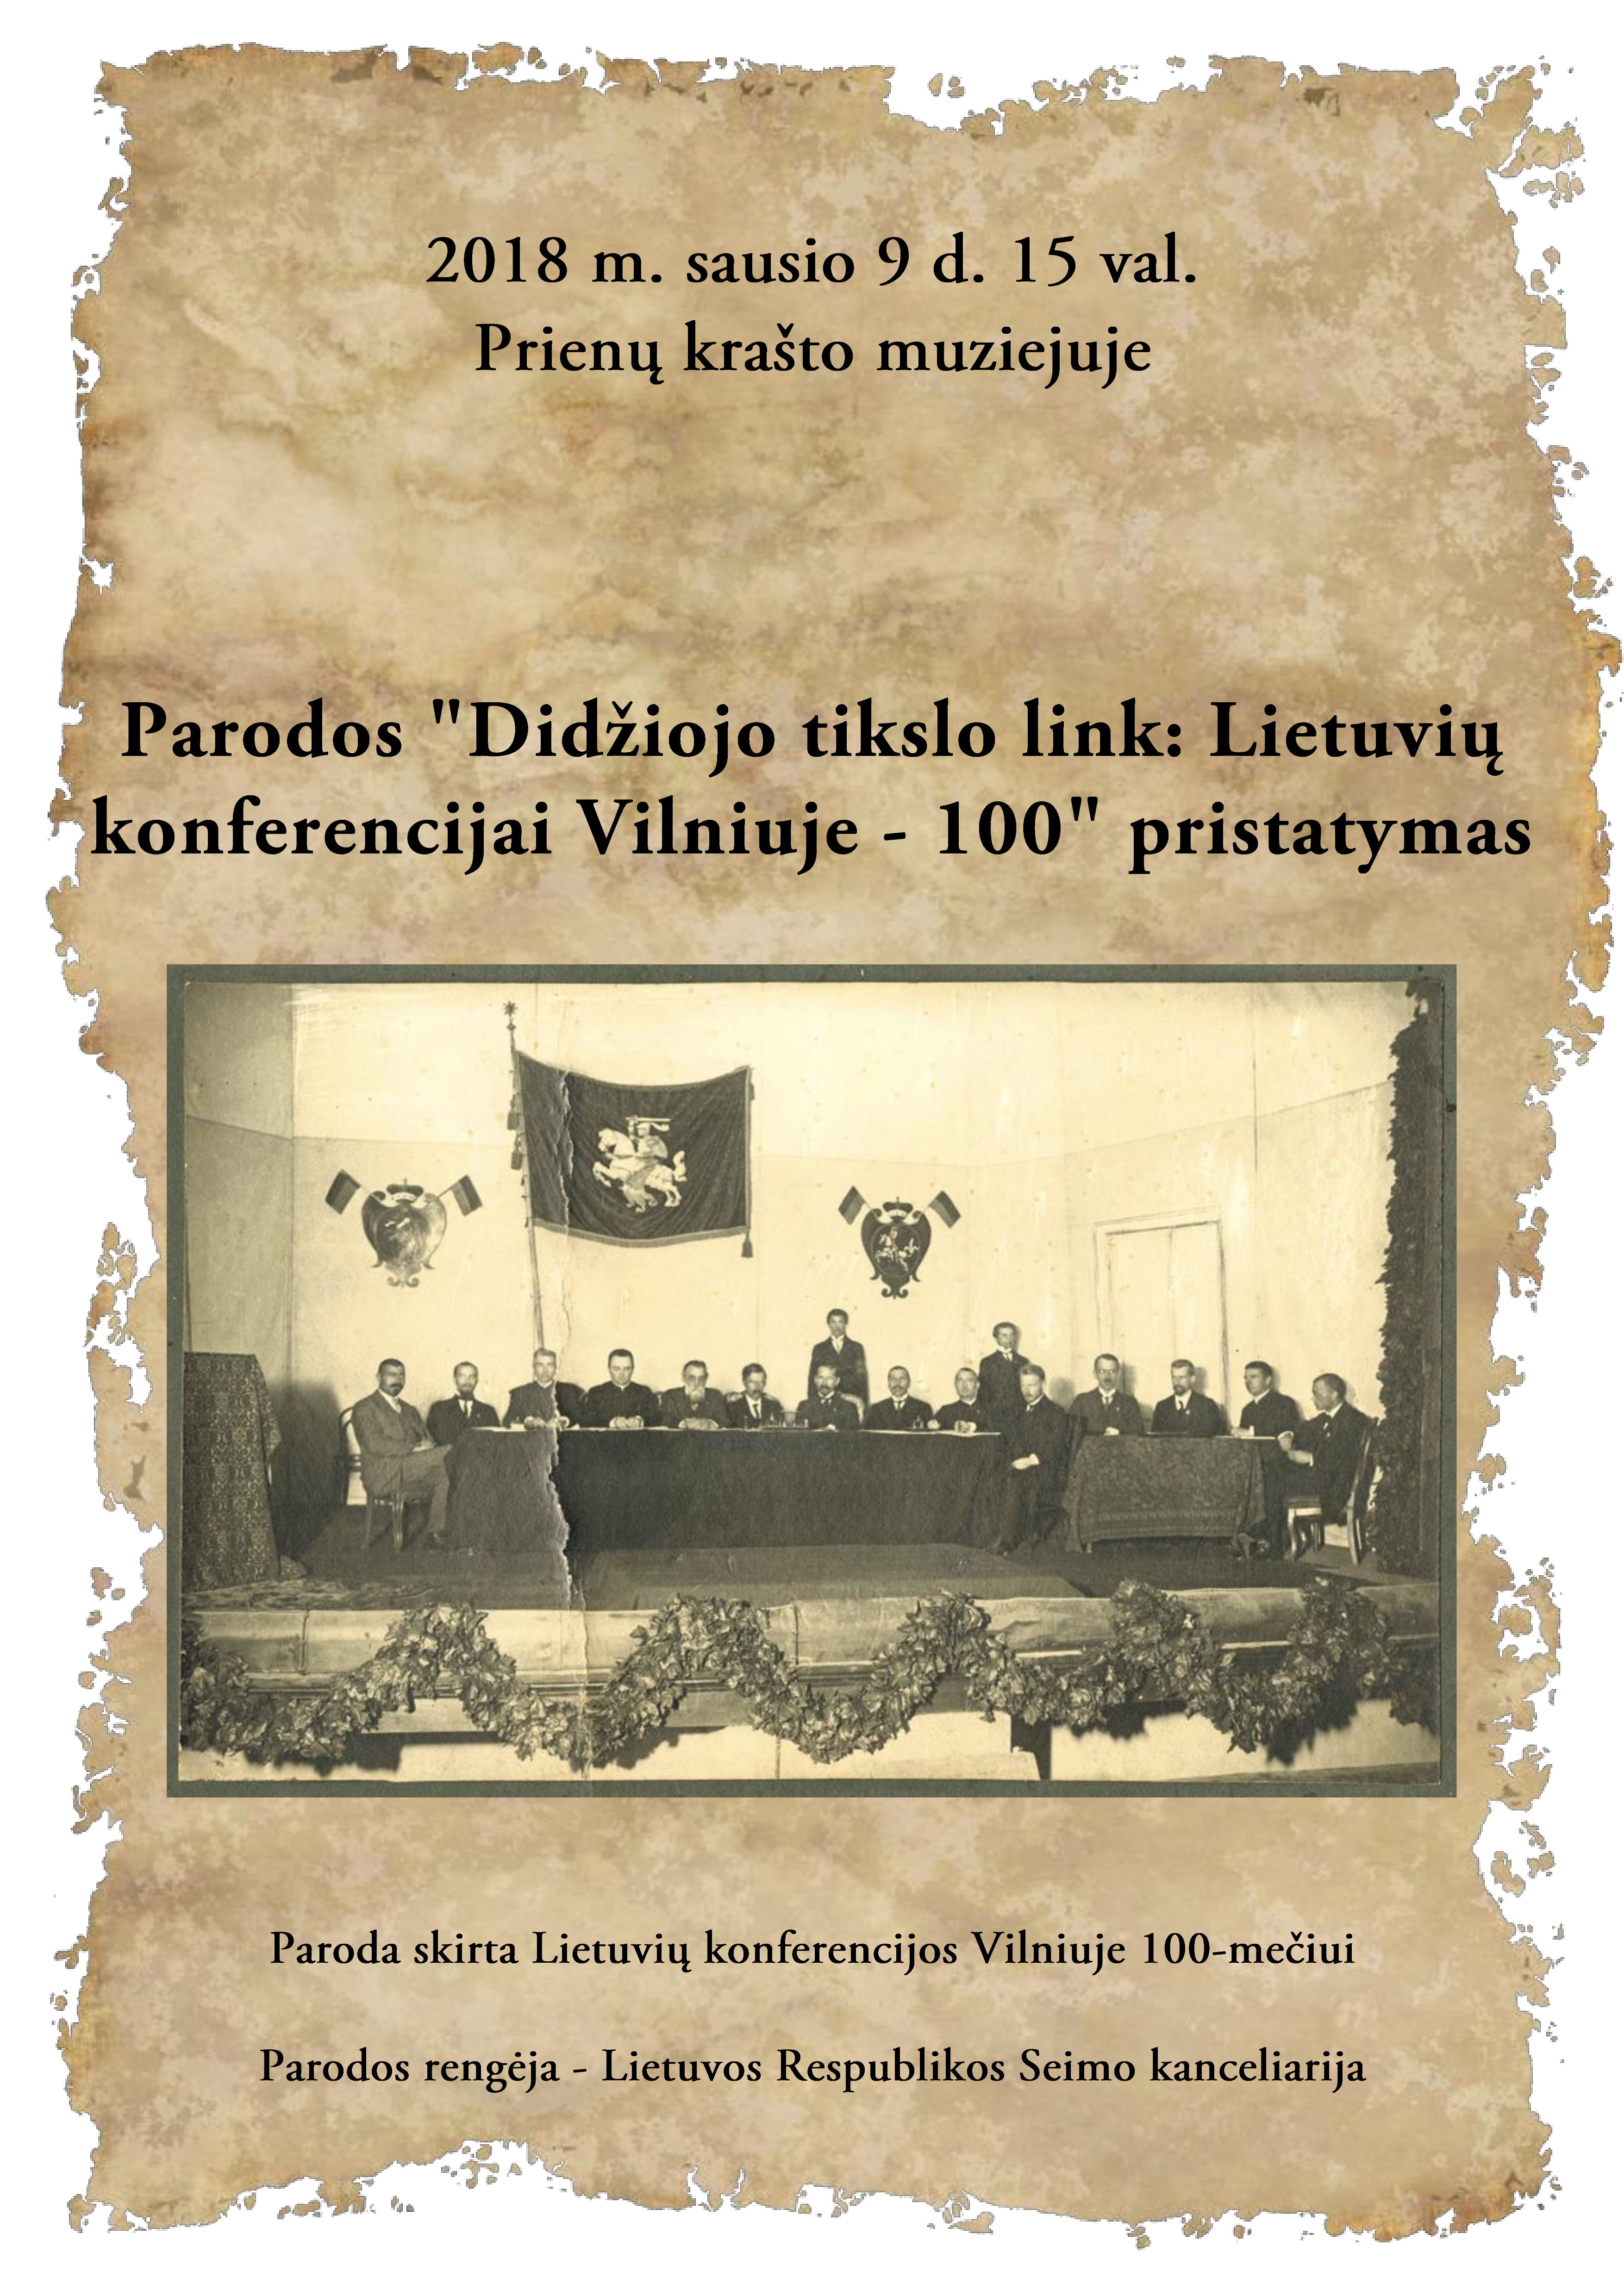 Didžiojo tikslo link Lietuvių konferencijai Vilniuje - 100_Apkarpytas